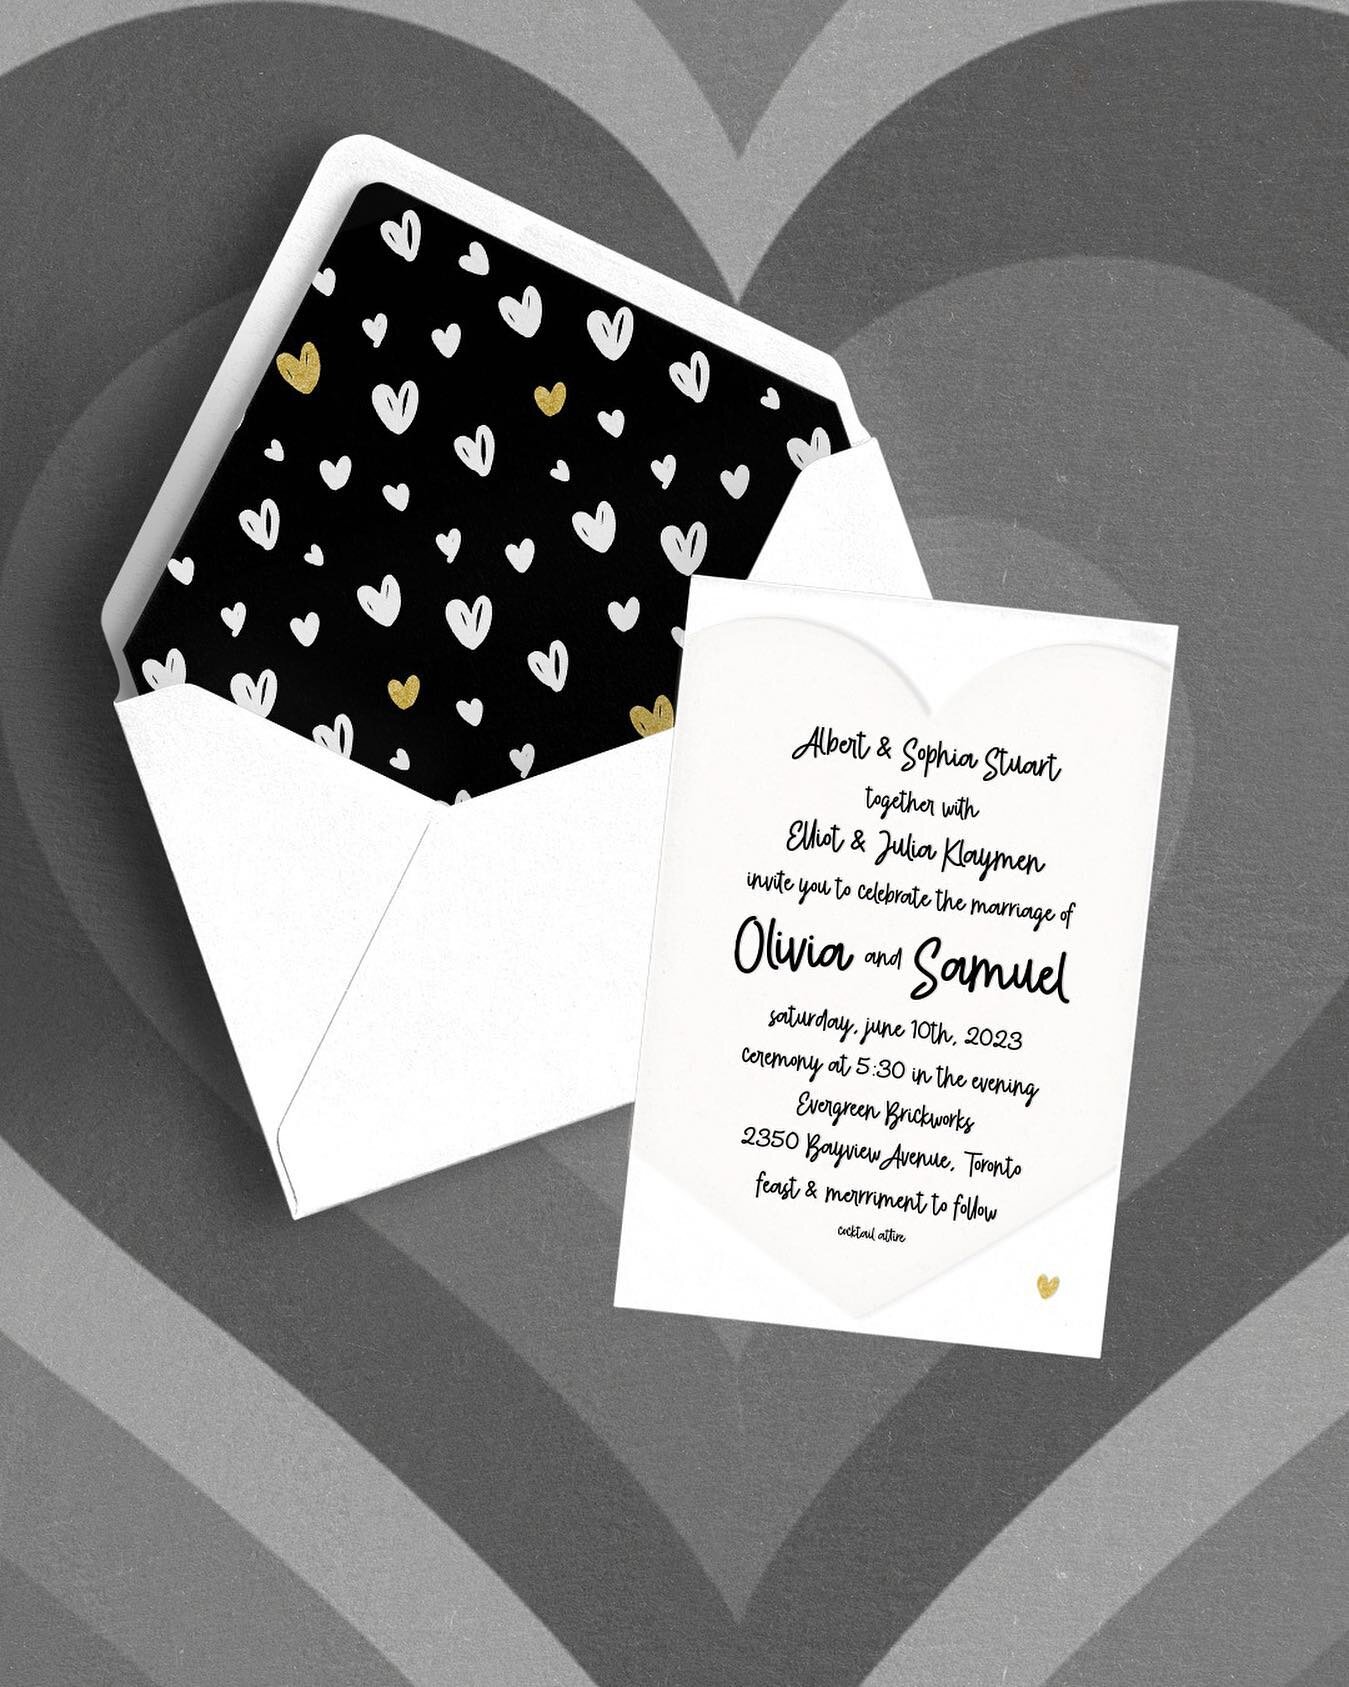 Must be love on the brain 🖤🤍🖤🤍 #smudgedesignstoronto #invitations #weddinginvitationsuite #torontoinvitations #luxuryinvitations #eventdesign #letterpressinvitations